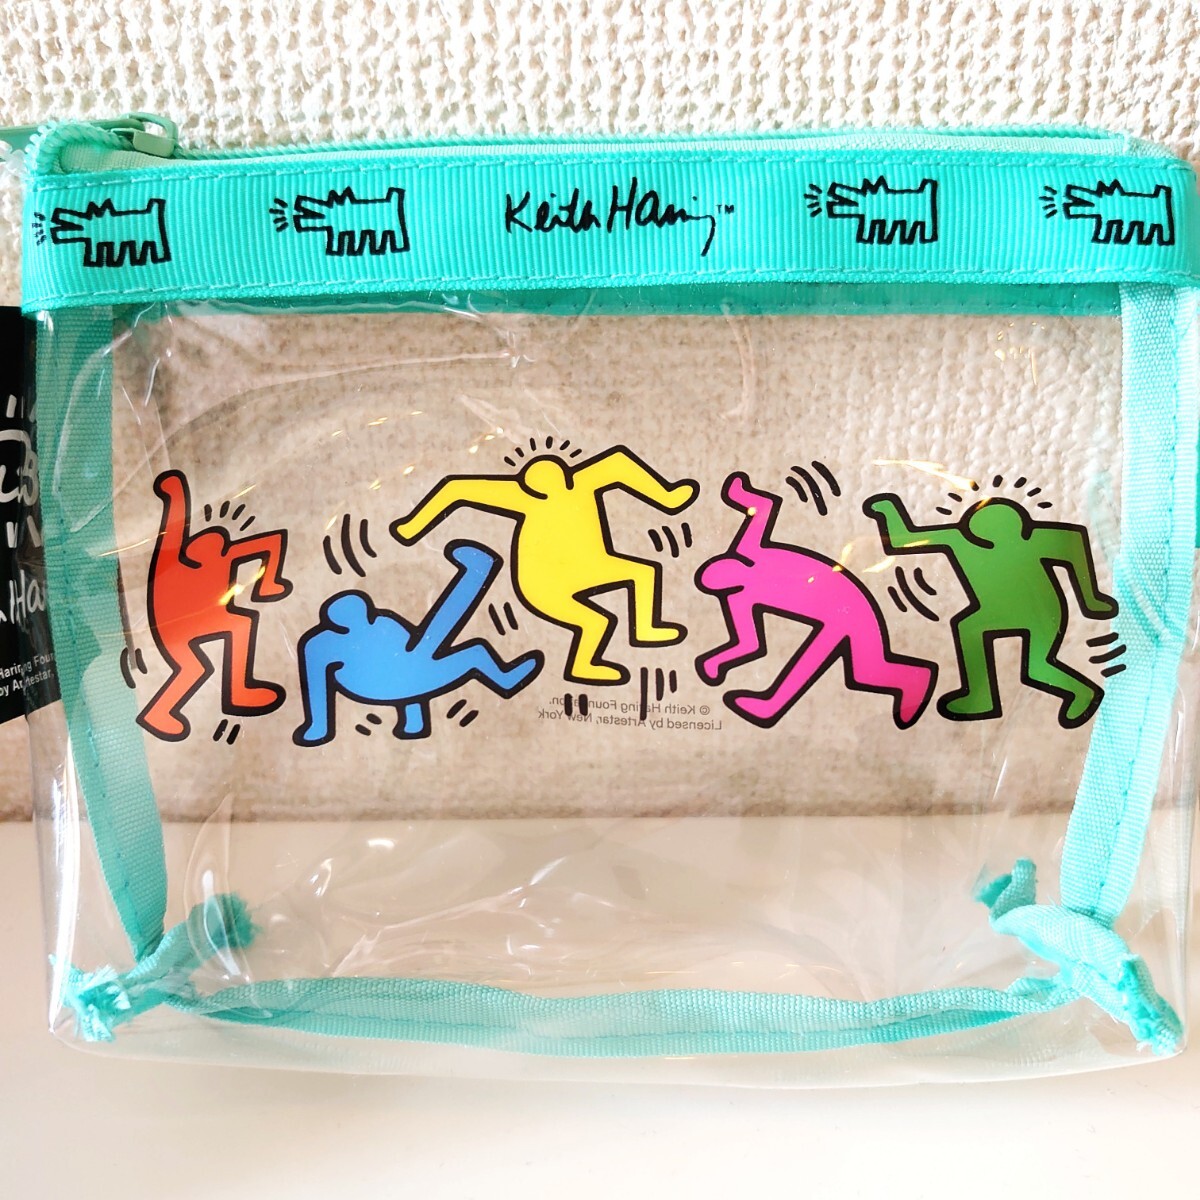 新品 未使用 Keith Haring キースヘリング クリア 台形 ポーチ 小物入れ ユニセックス 旅行 メイクポーチ bag ビニールクラッチバッグ の画像1